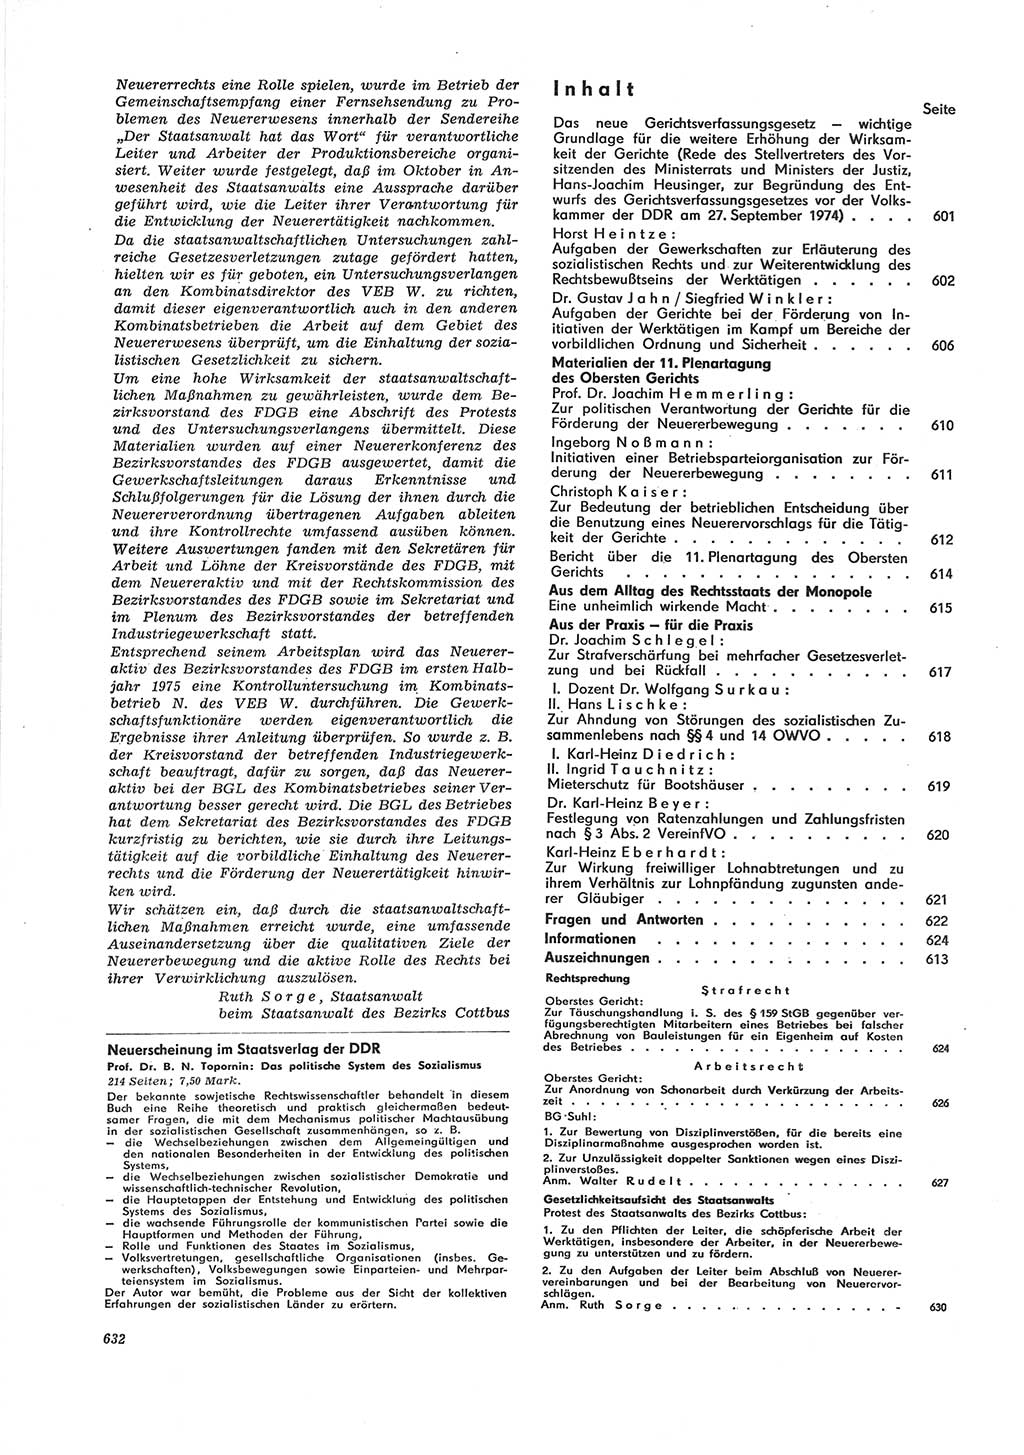 Neue Justiz (NJ), Zeitschrift für Recht und Rechtswissenschaft [Deutsche Demokratische Republik (DDR)], 28. Jahrgang 1974, Seite 632 (NJ DDR 1974, S. 632)